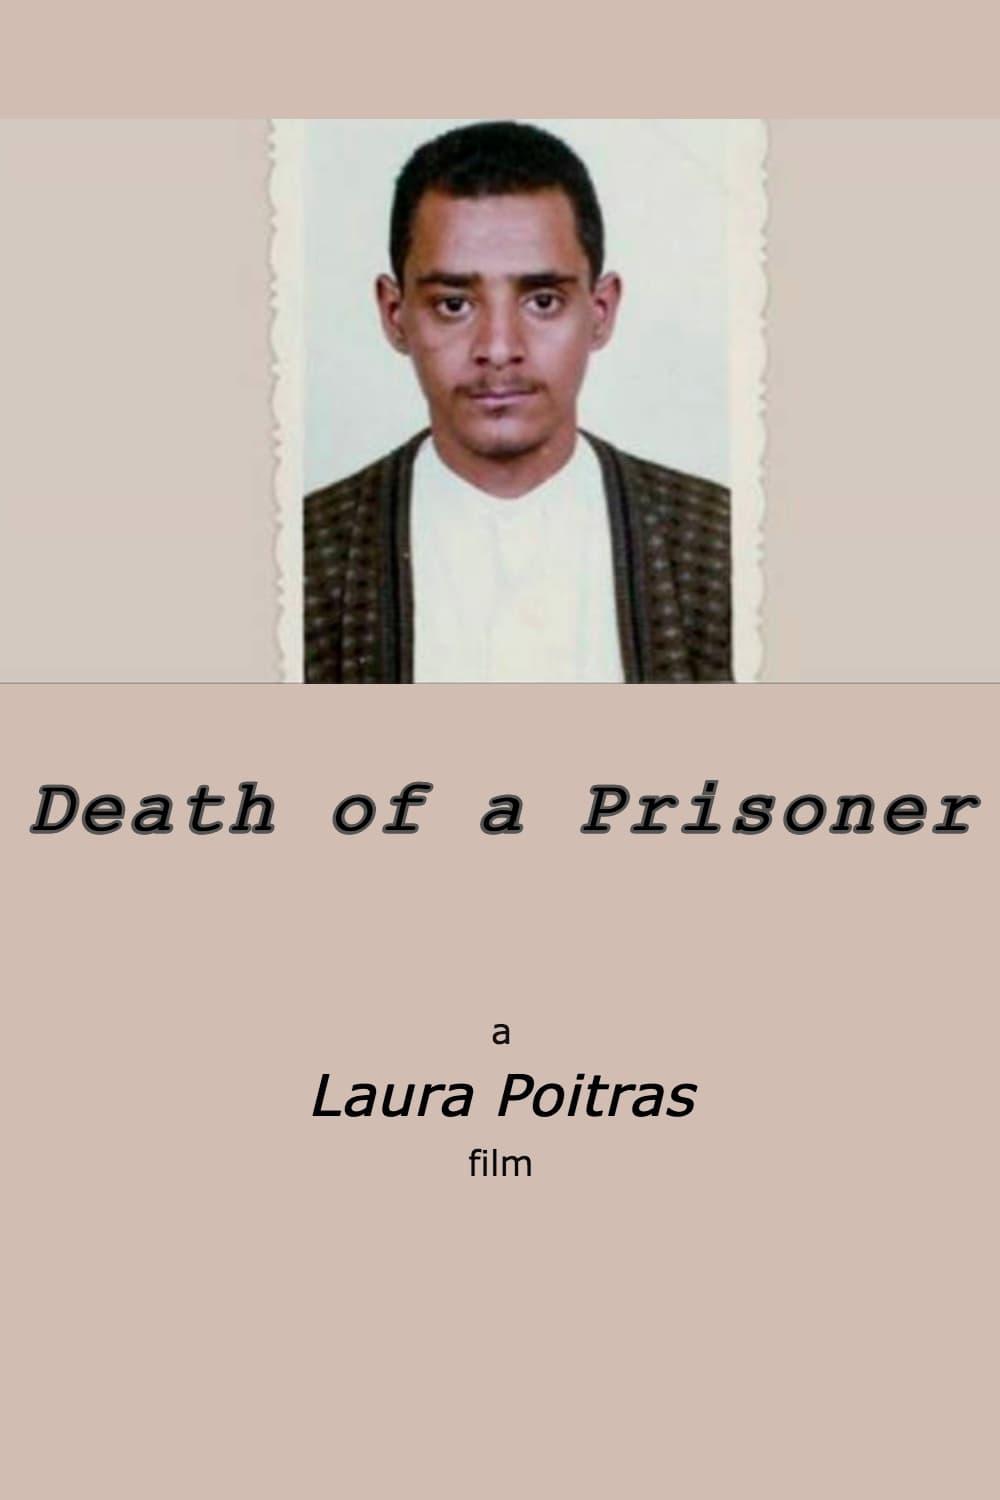 Death of a Prisoner poster